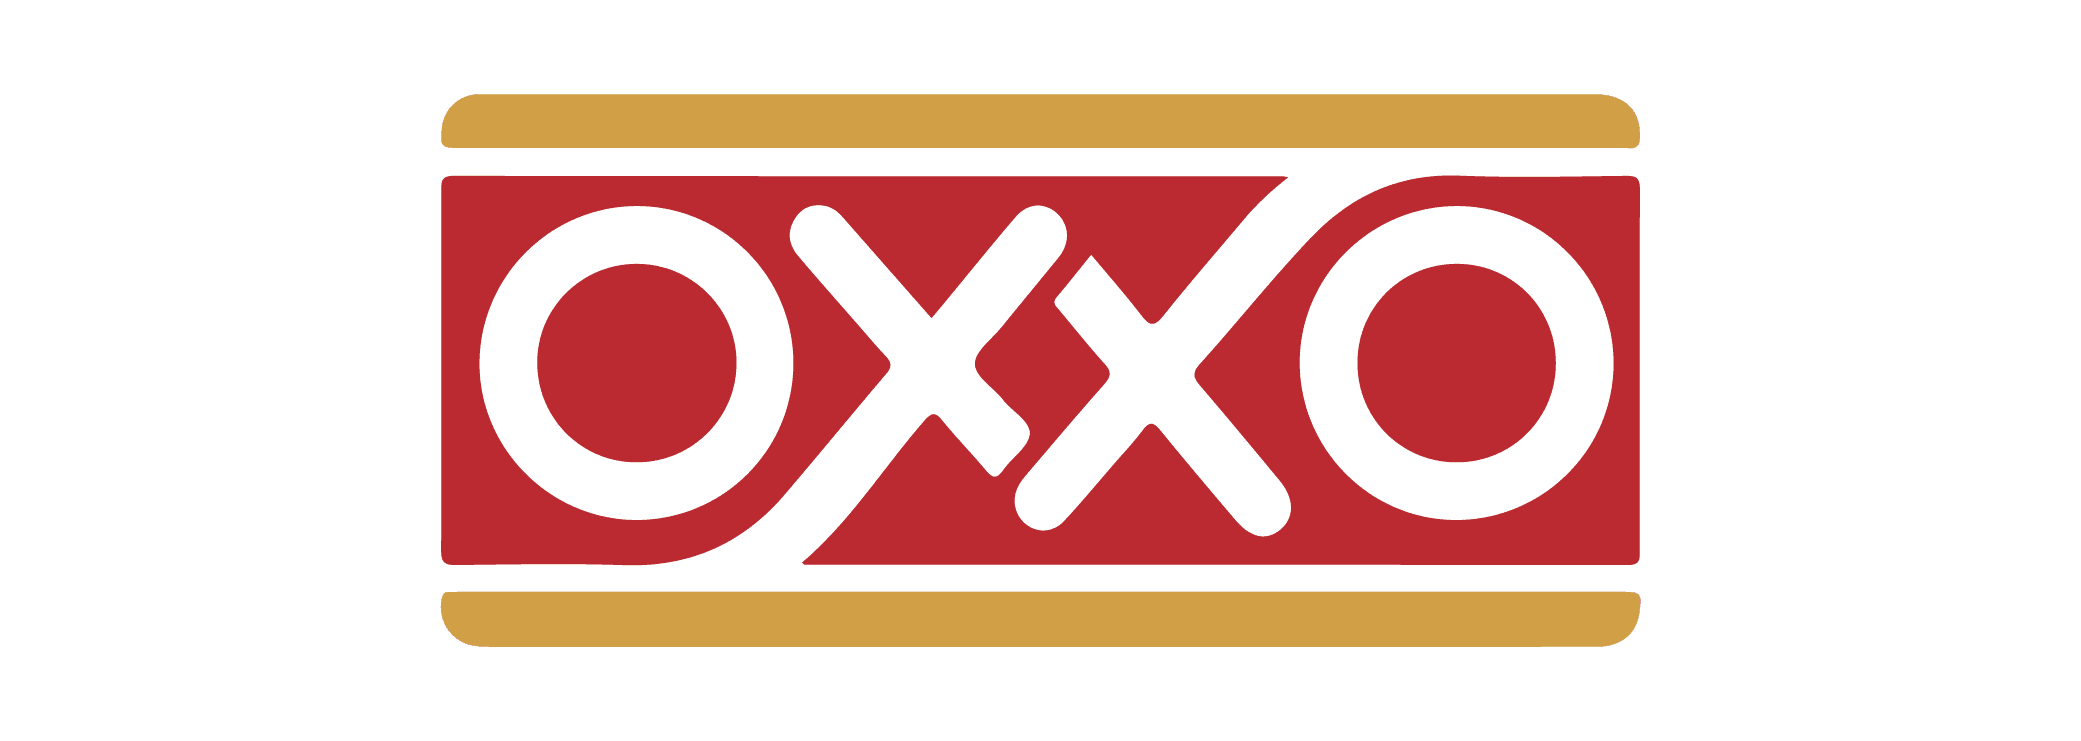 GPTWW - Oxxo Pago